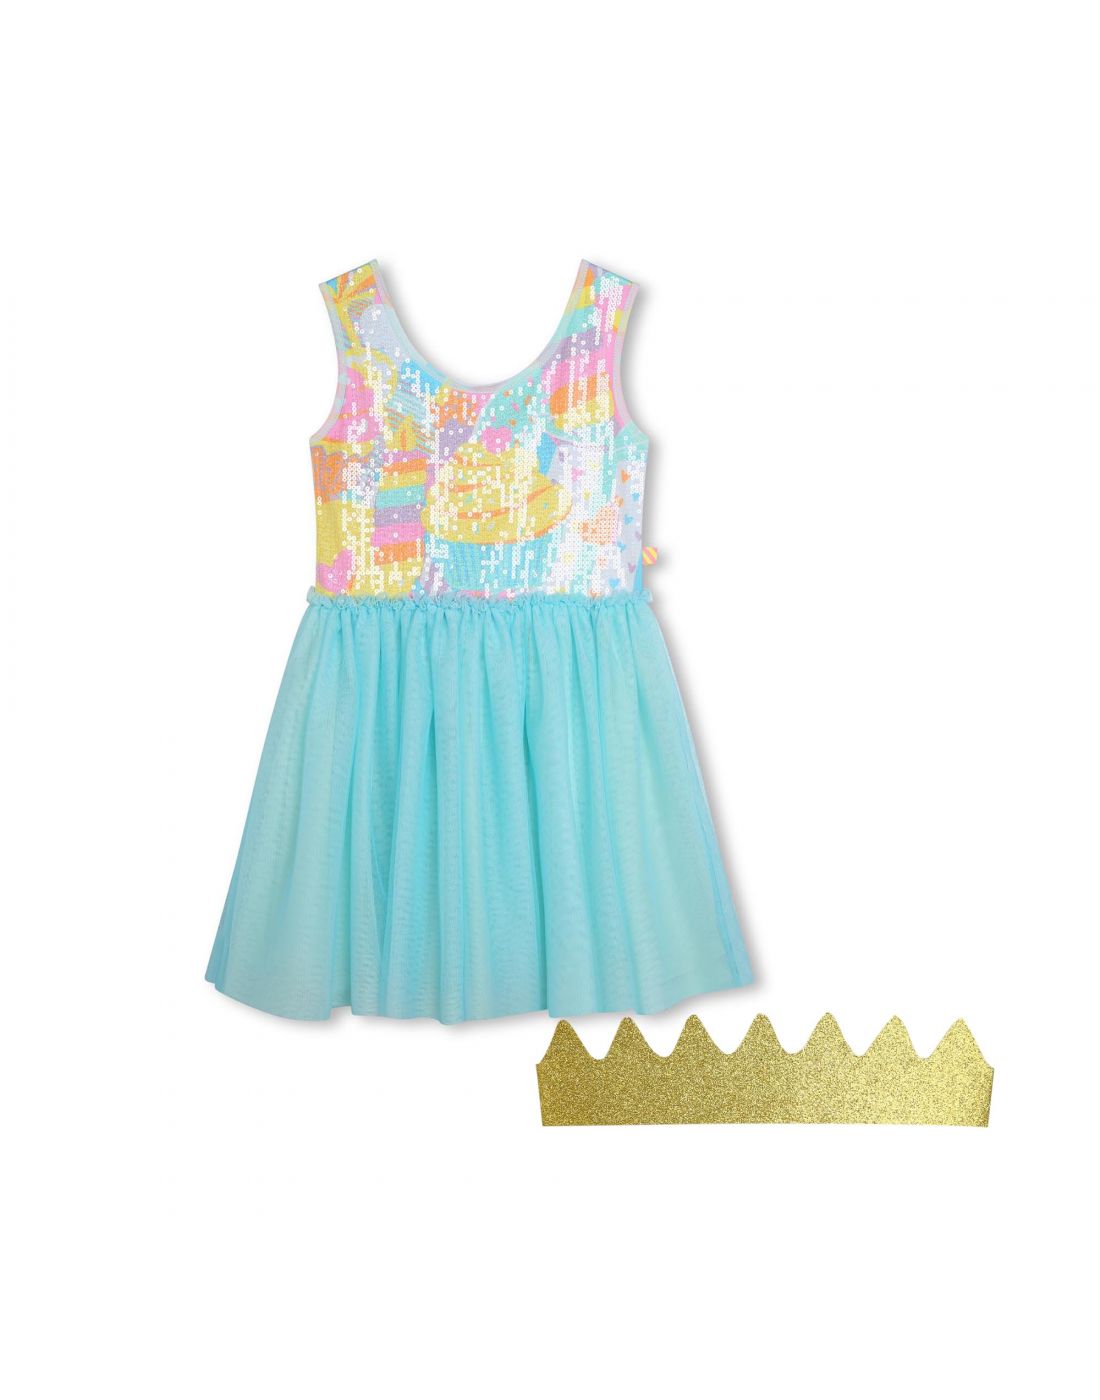 Παιδικό Φόρεμα Με Κορώνα Billieblush, Billieblush, 24161051 | LapinKids.com  | LAPIN KIDS